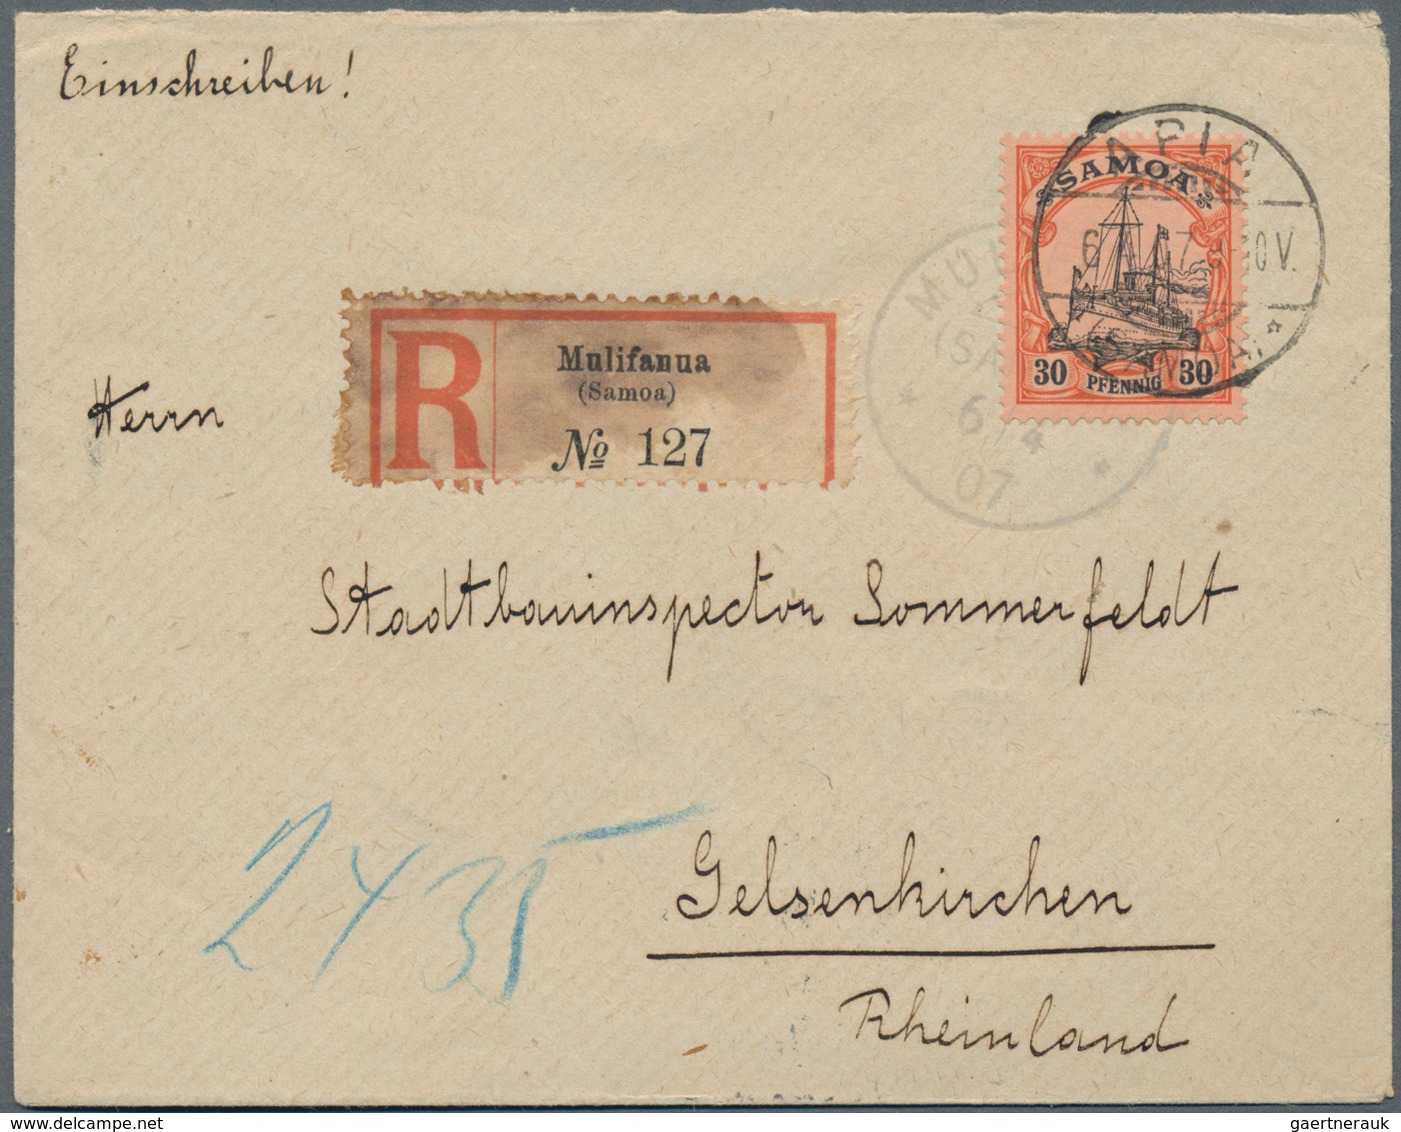 Deutsche Kolonien - Samoa: 1887/1914, nahezu komplette Stempelsammlung der dt. Postanstalten auf Sam